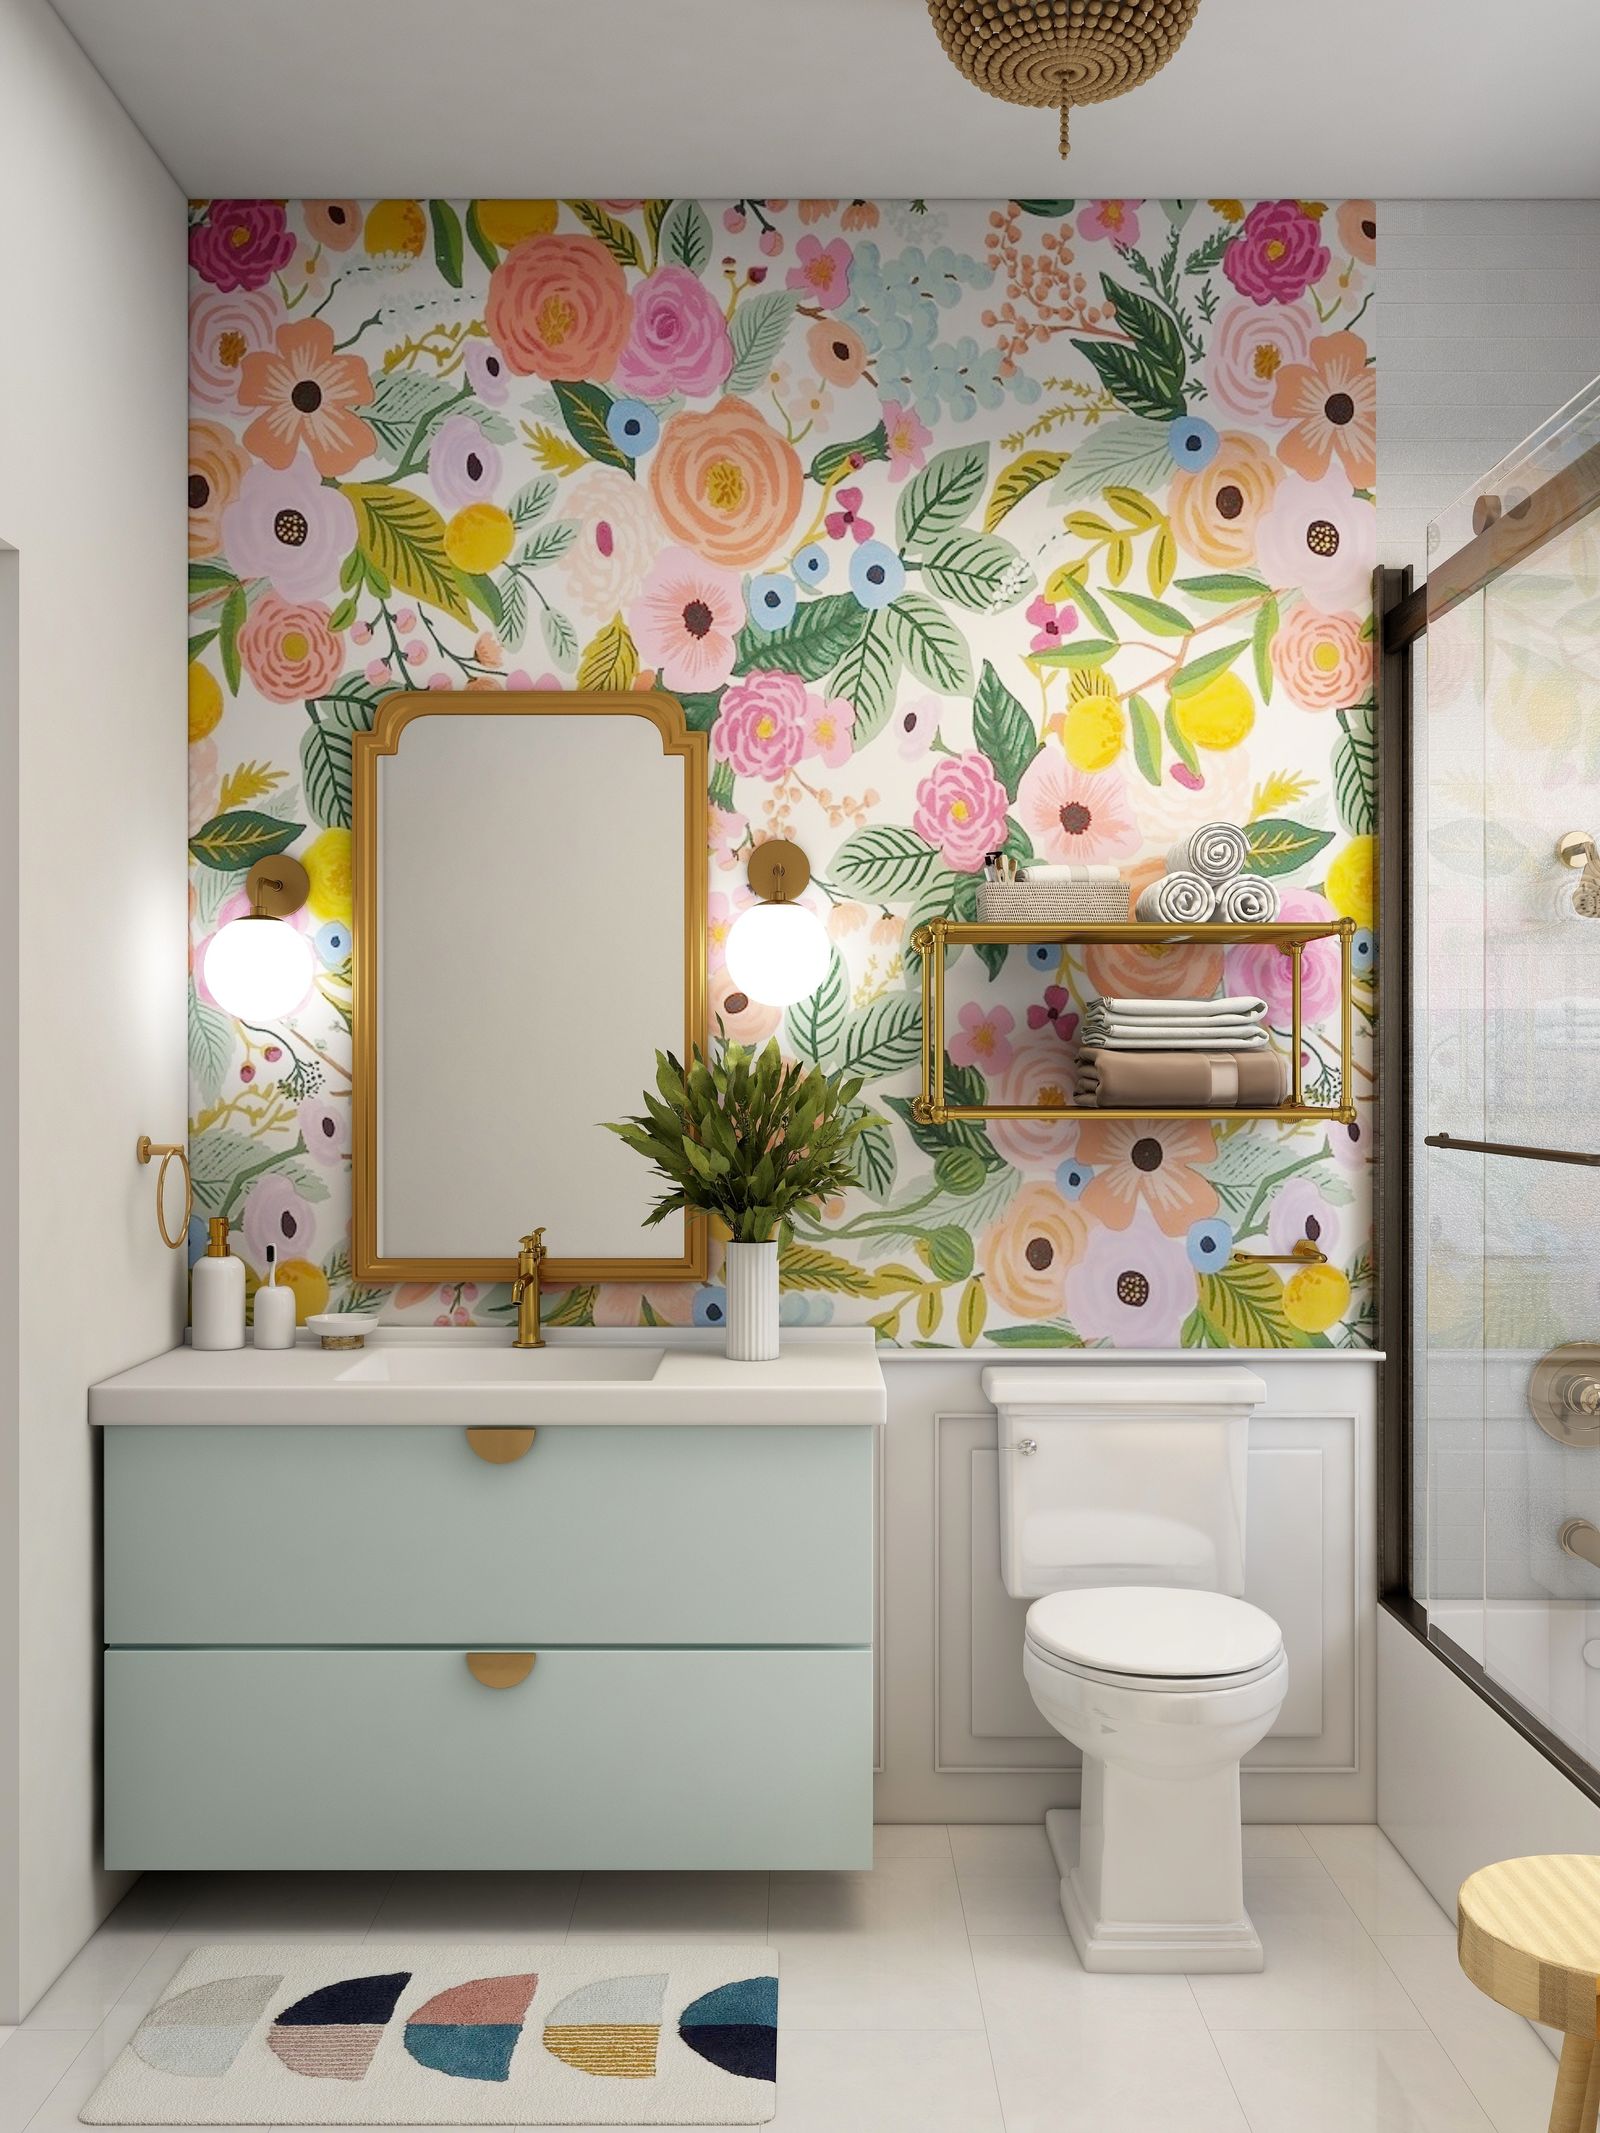 décoration murale salle de bains